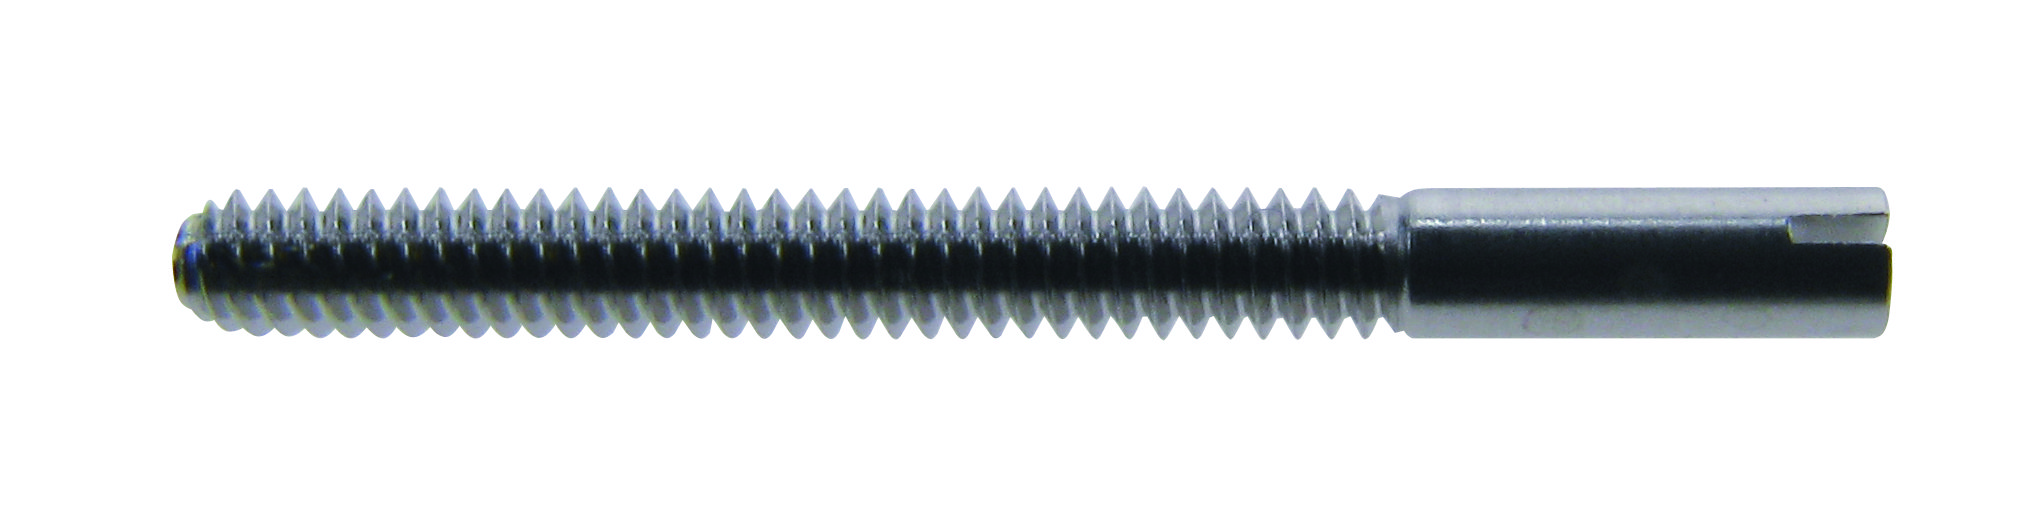 Śruba do bransolety stal nierdzewna długość 15,00mm Ø 1,20mm, zawartość 5 szt.